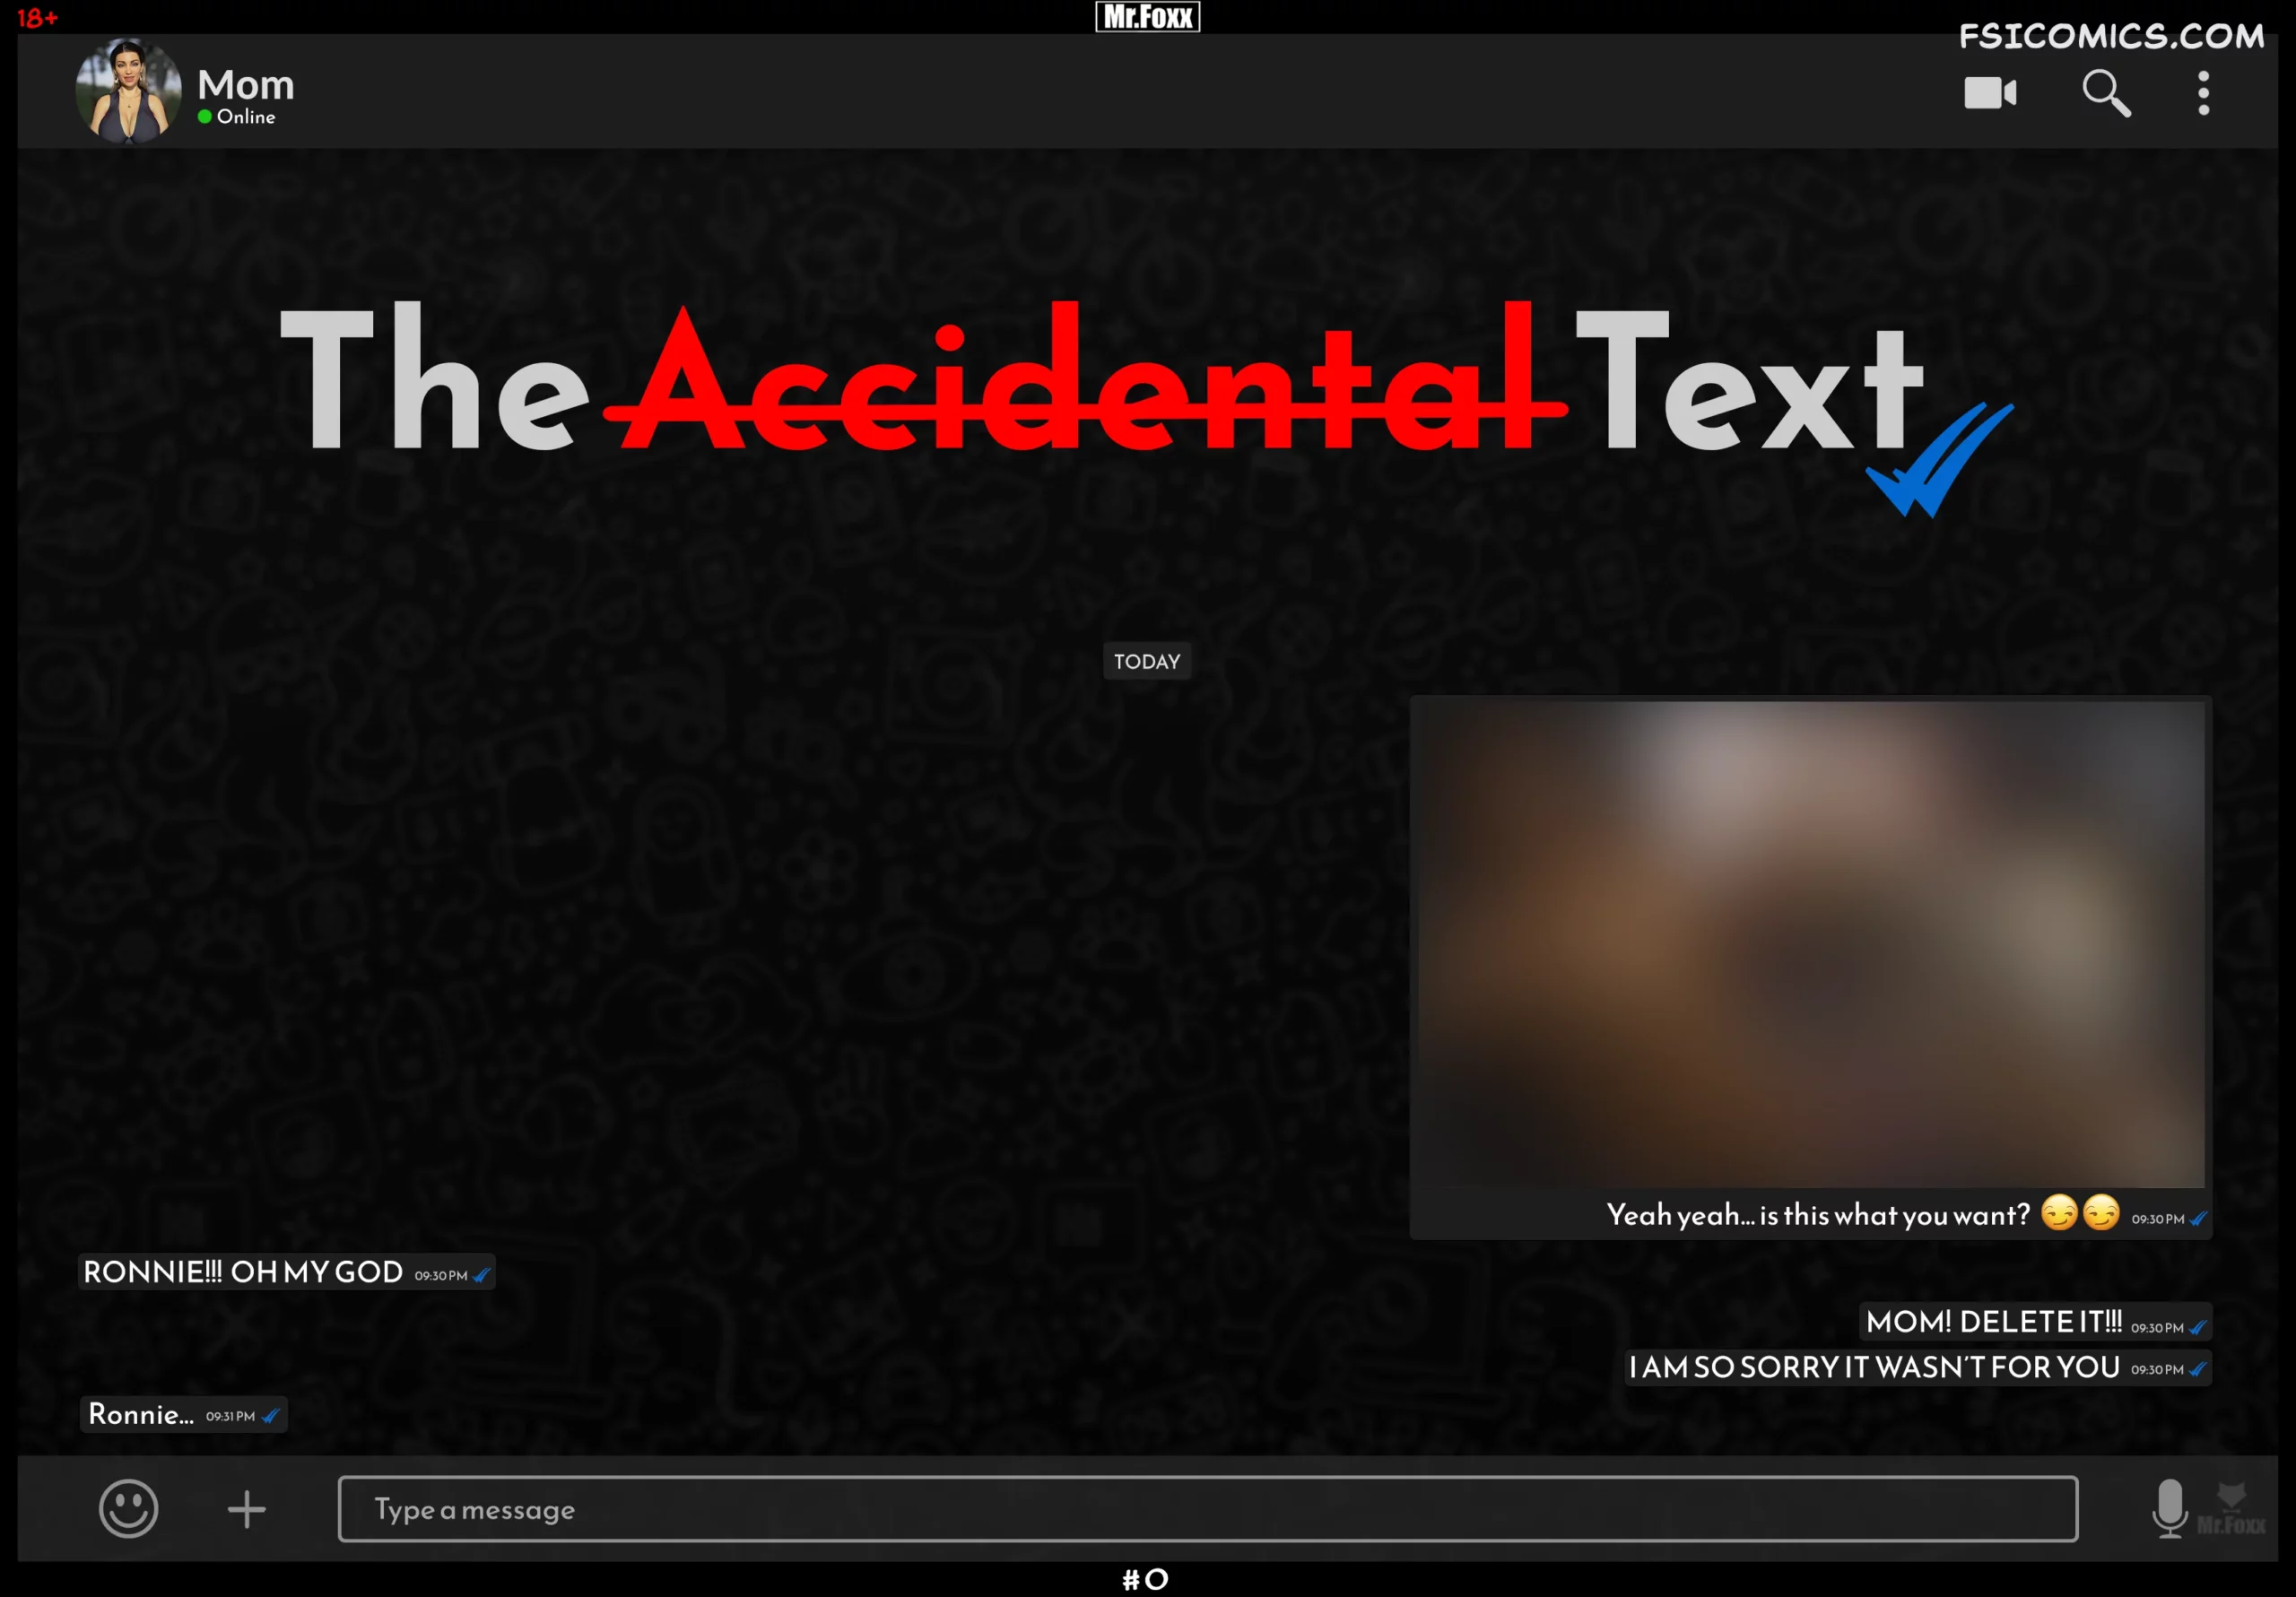 The Accidental Text - Mr.FOXX - 295 - FSIComics